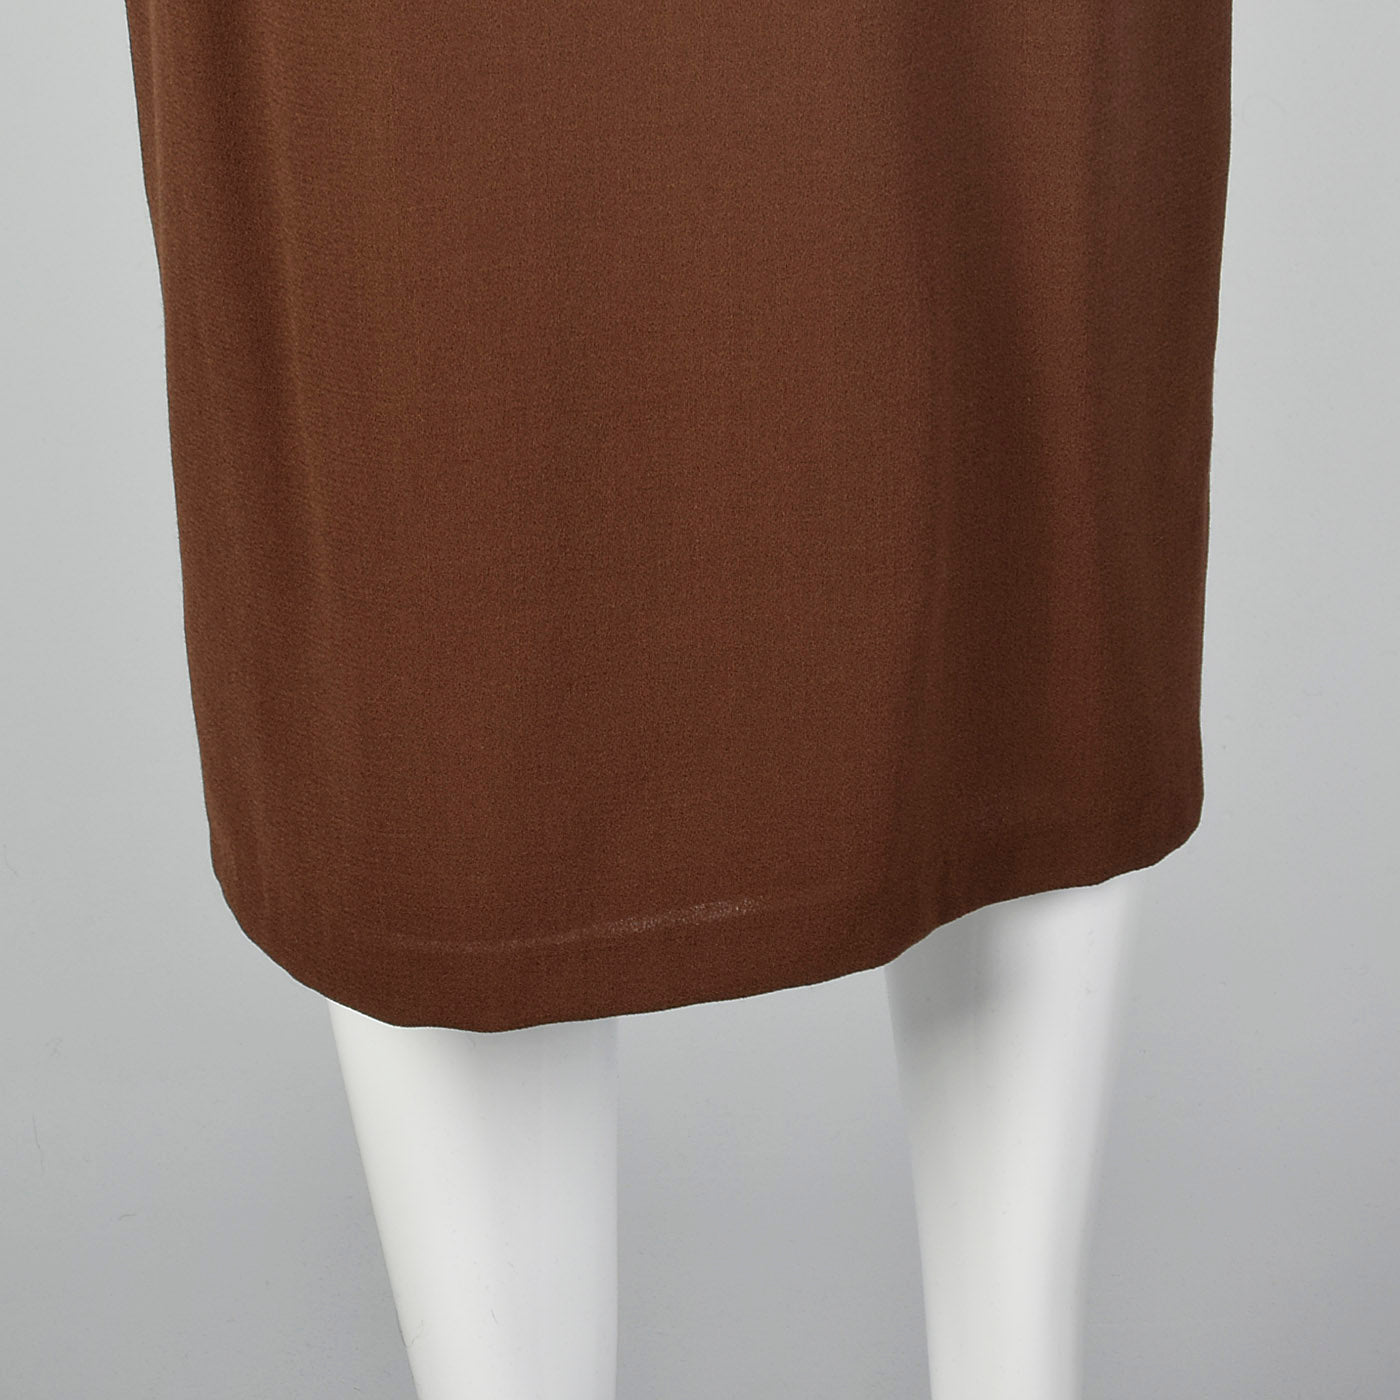 1980s Asymmetrical Brown Wool Crepe Skirt